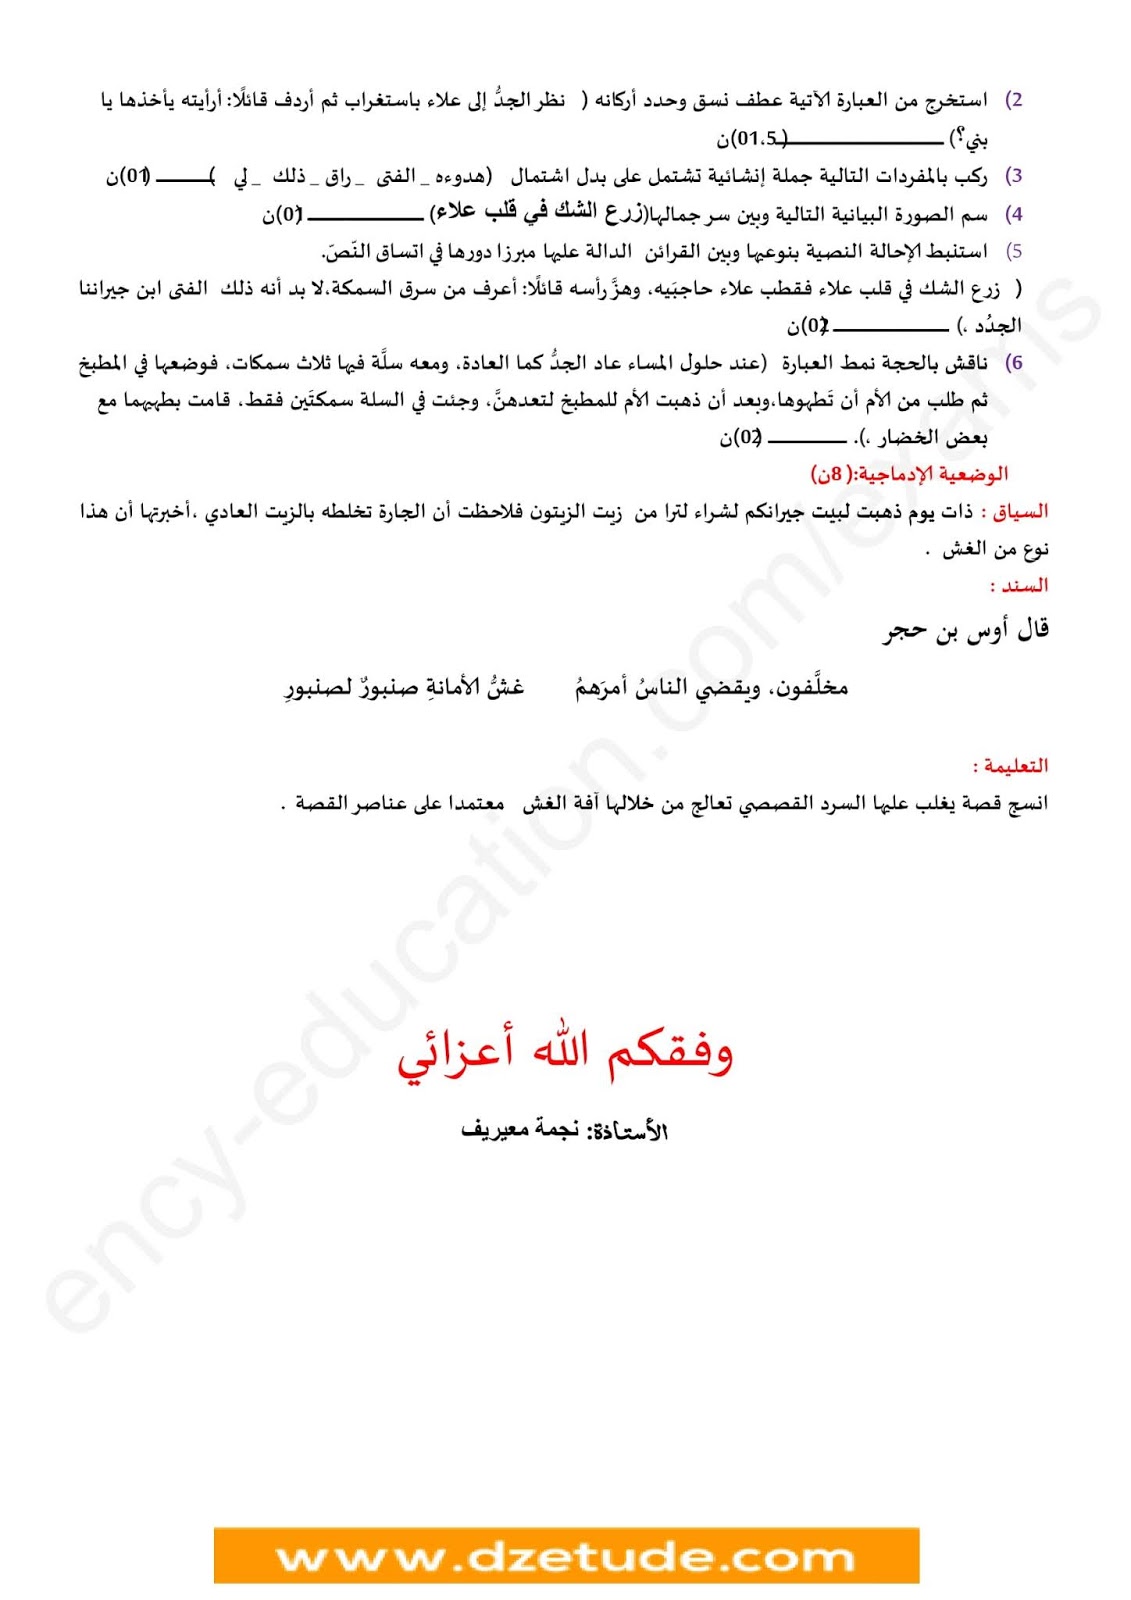 فرض الفصل الأول في اللغة العربية للسنة الرابعة متوسط - الجيل الثاني نموذج 7